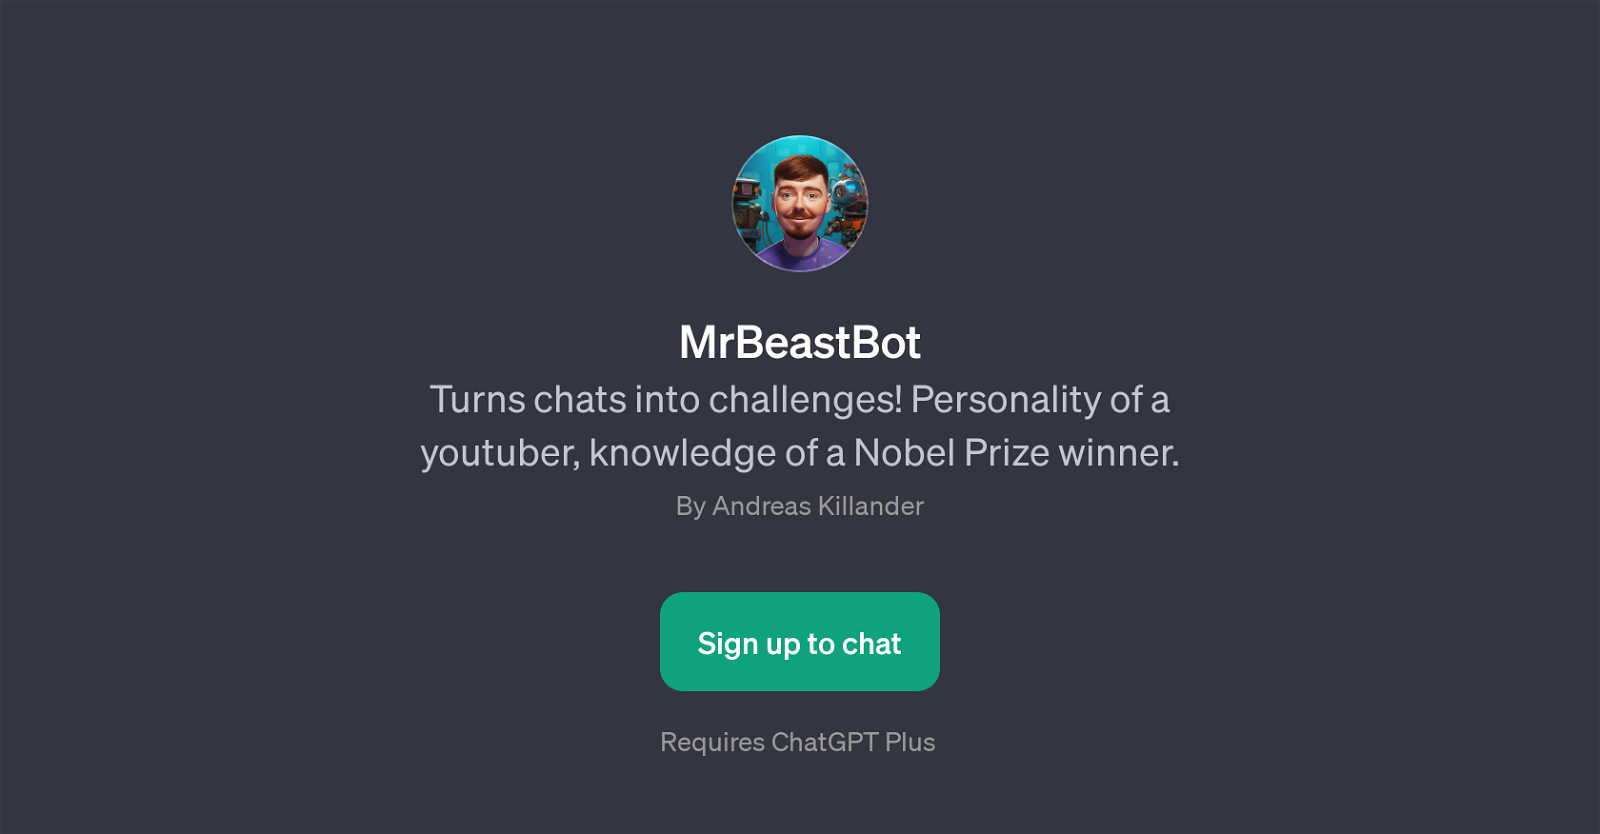 MrBeastBot website